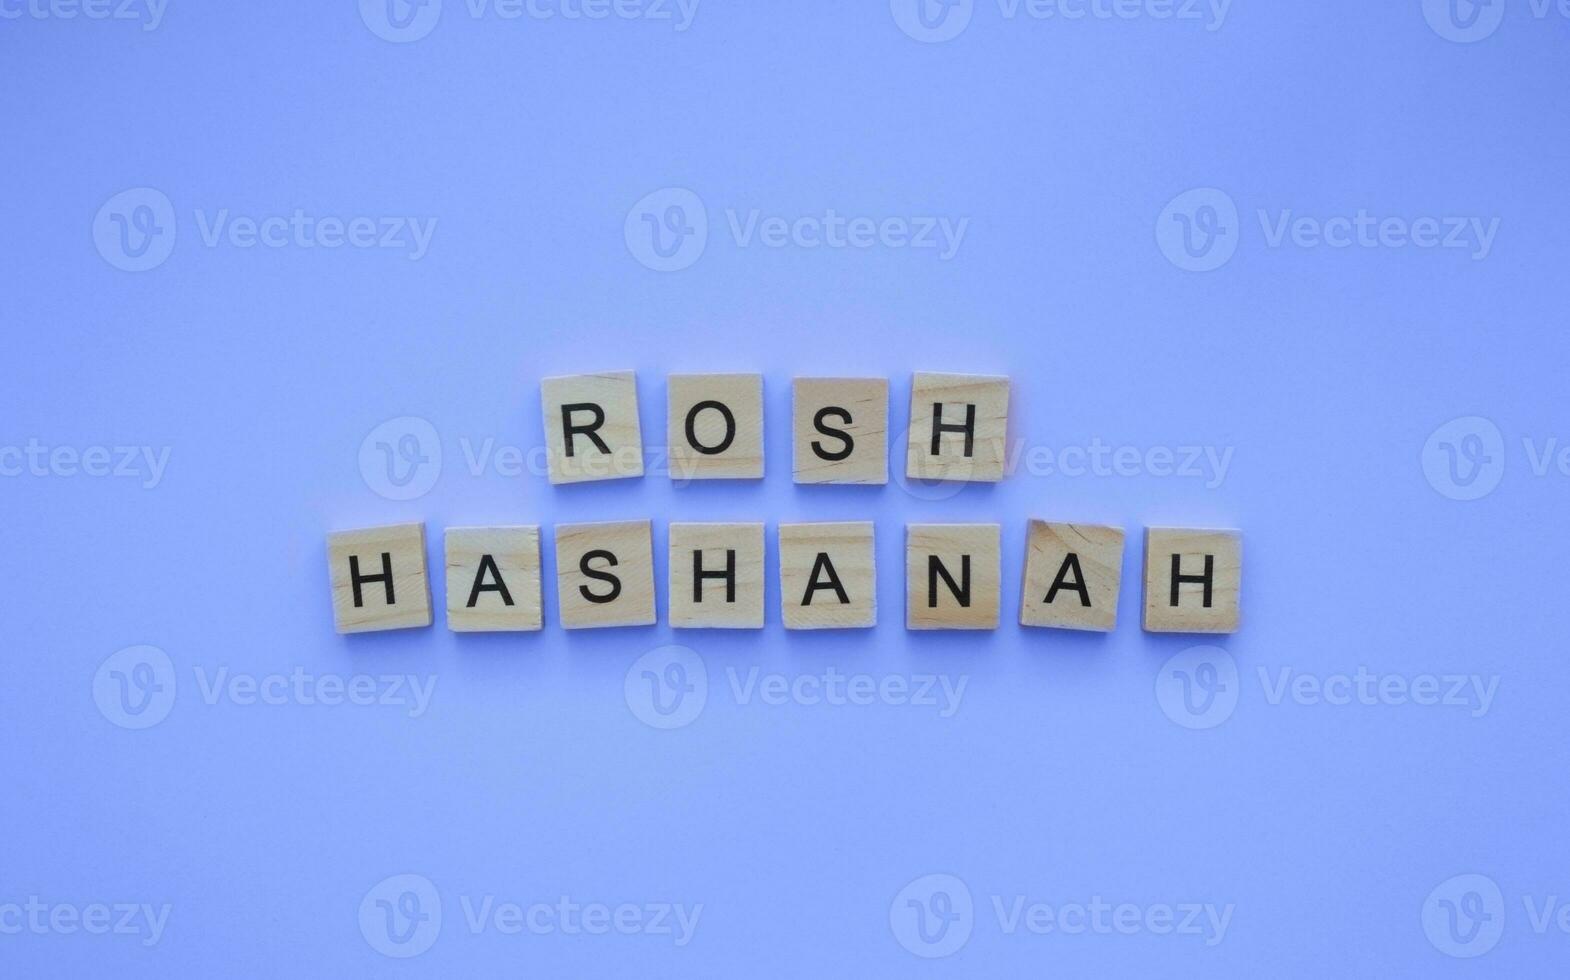 september 15-17, rosh hashanah, minimalistisk baner med ett inskrift i trä- brev foto